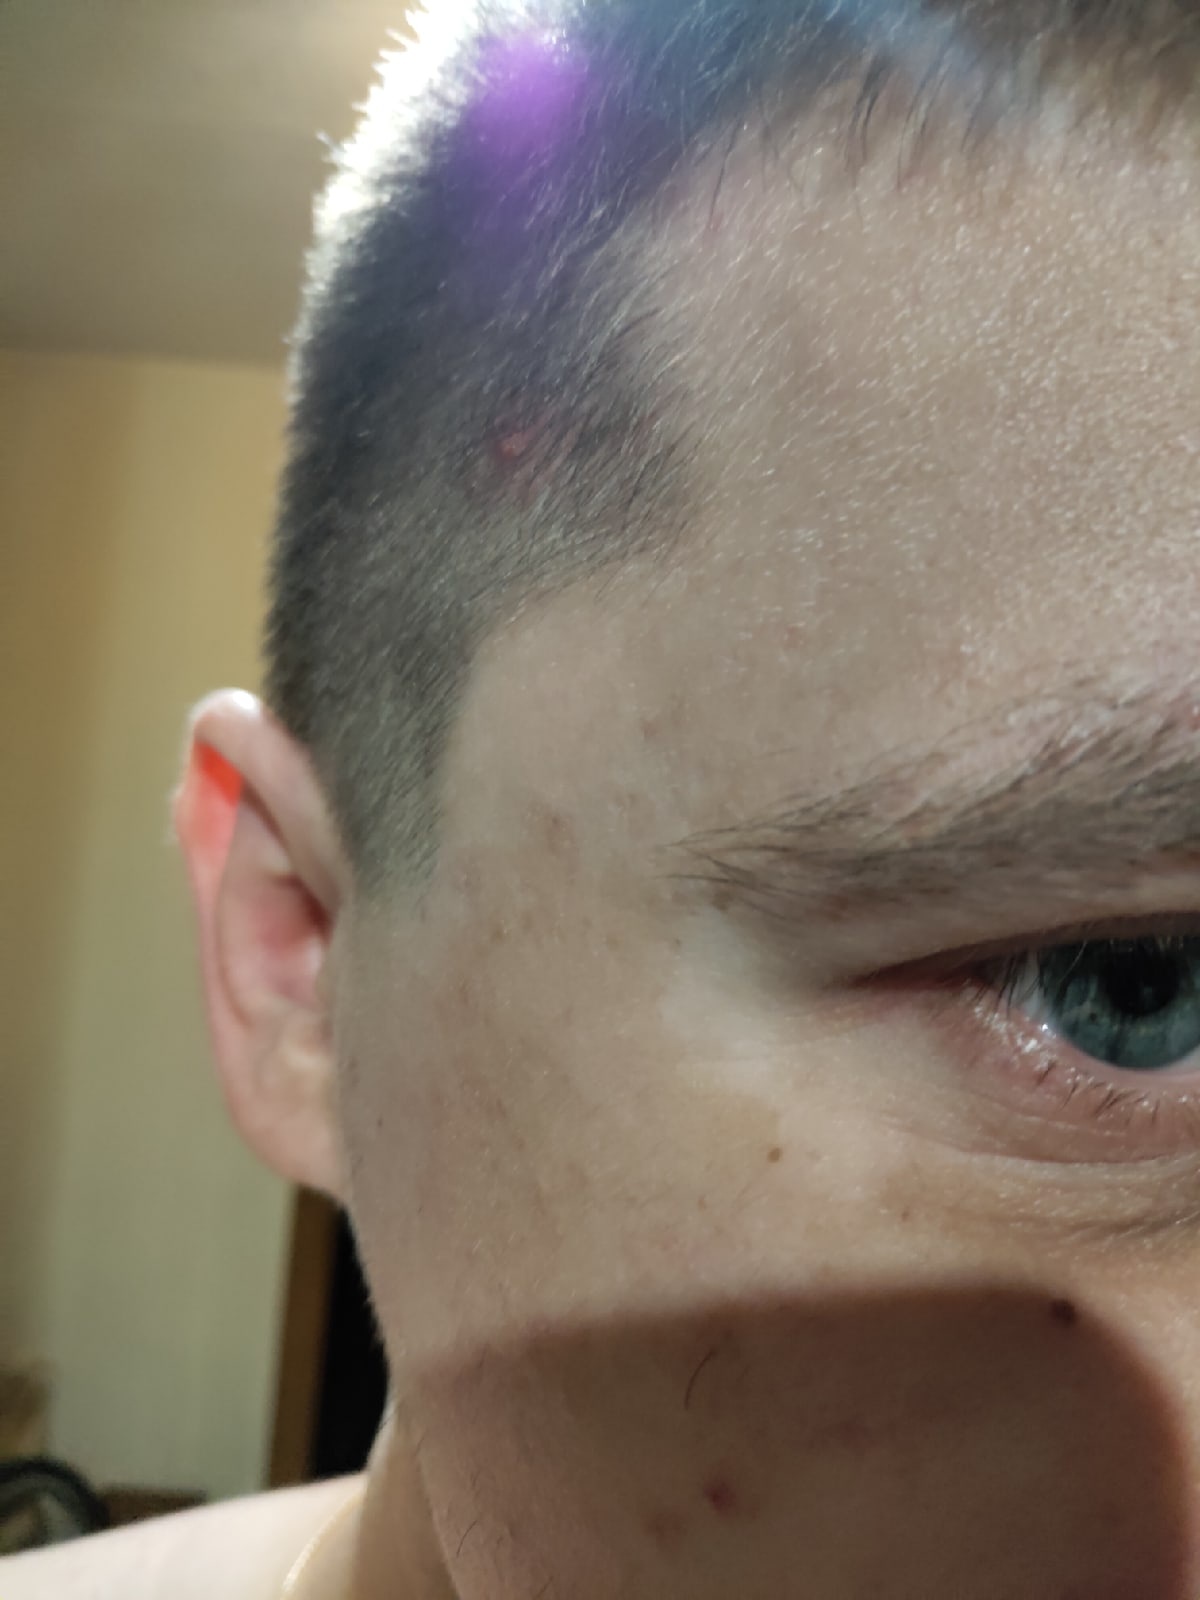 Подскажите пожалуйста, что это у меня за белые пятна на лице и на руках? | Консультация дерматолога в Минске на DOKTORA.BY - ВРАЧИ БЕЛАРУСИ